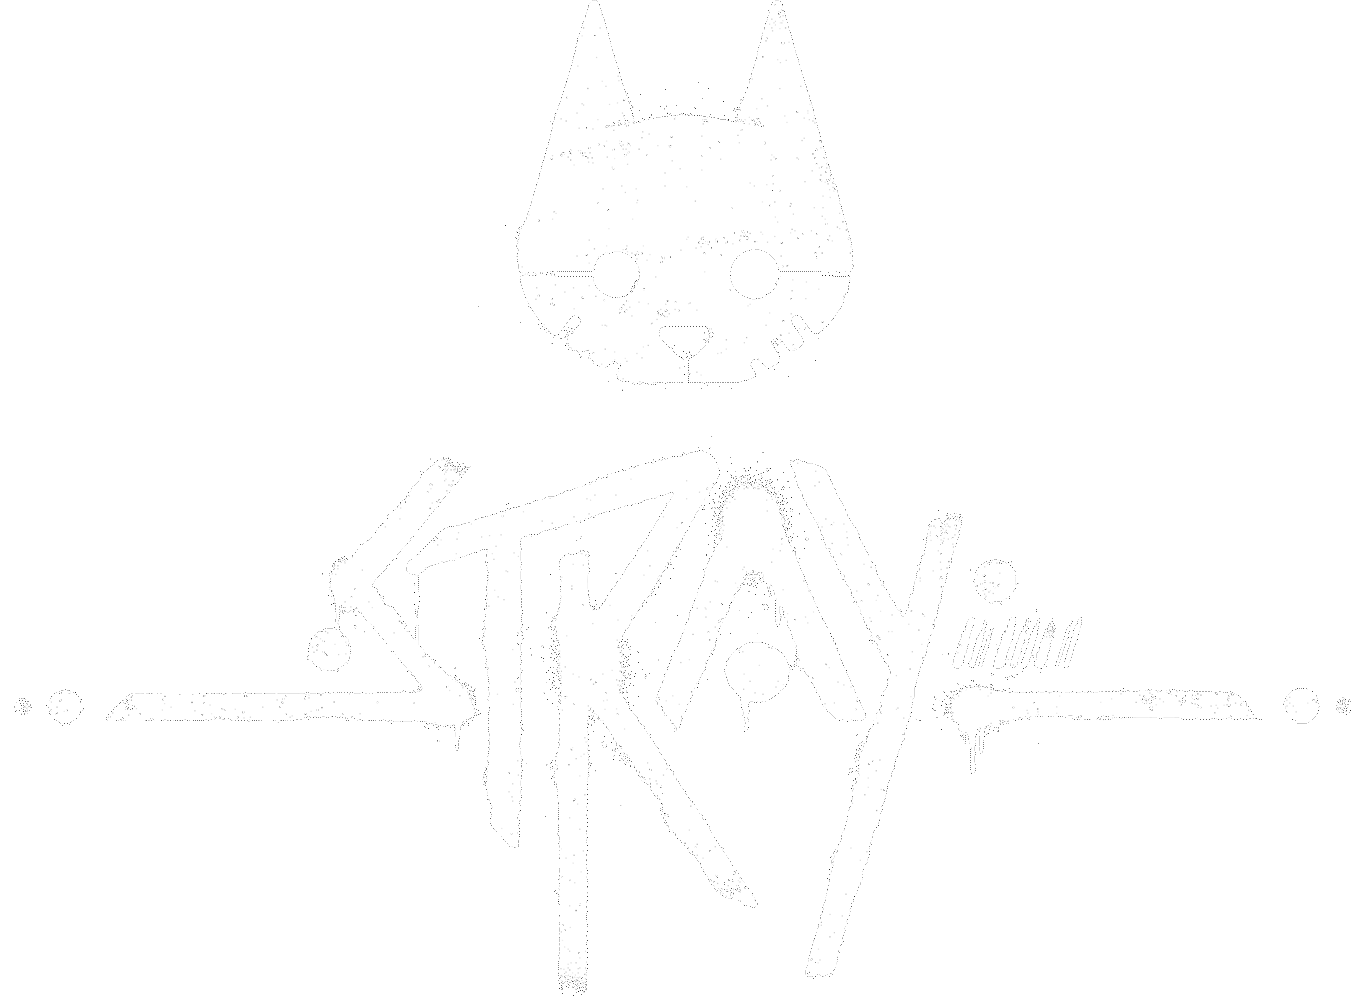  Stray (PS4) : Videojuegos